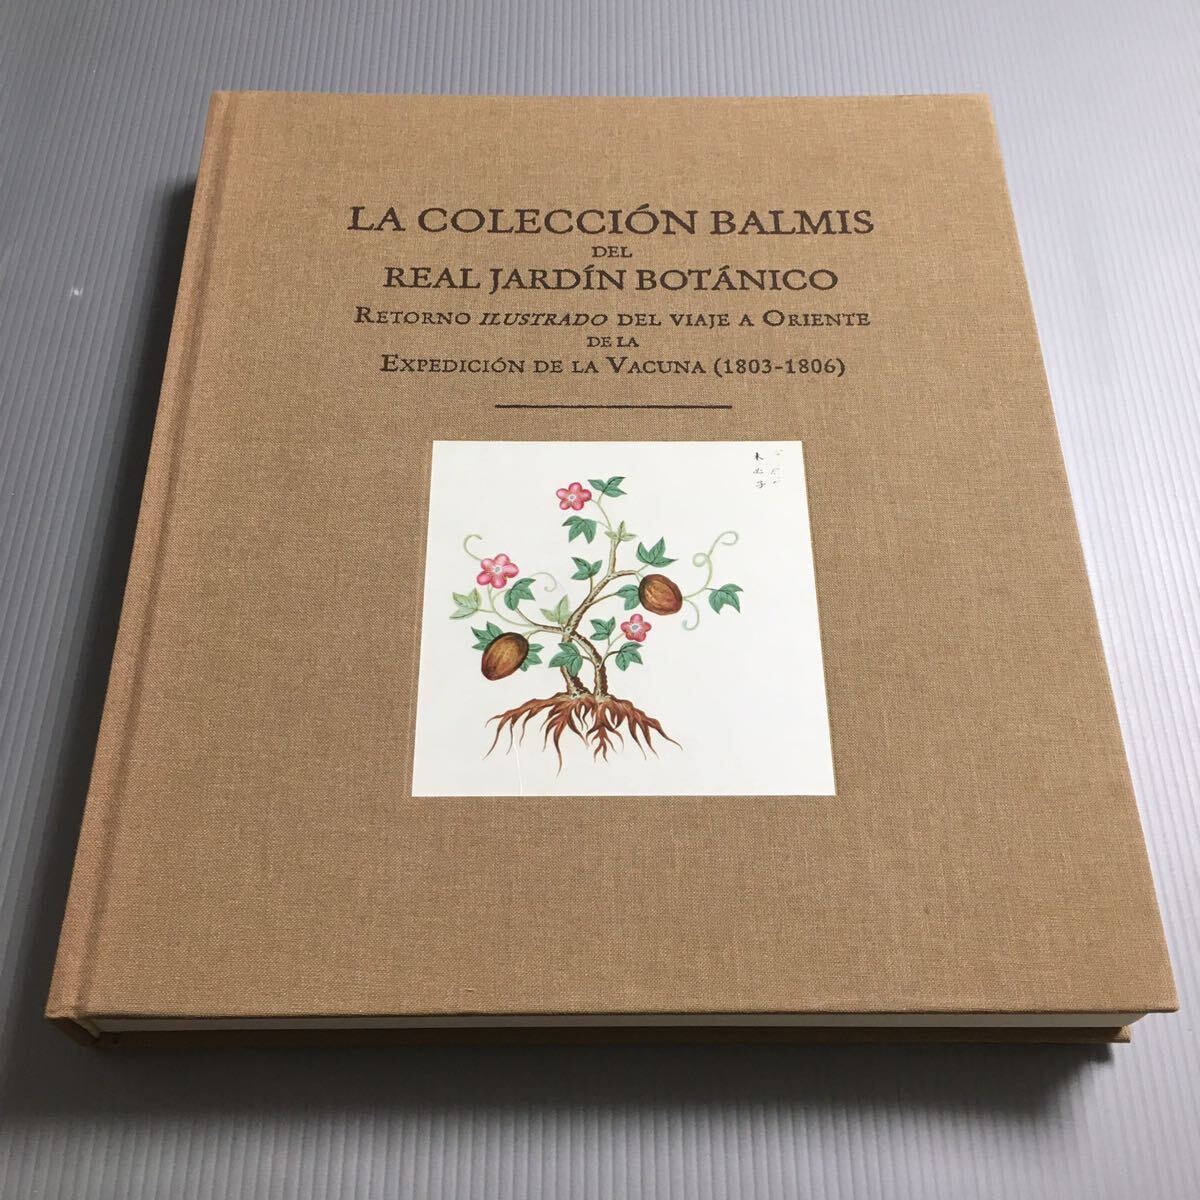 【洋書】 LA COLECCION BALMIS del REAL JARDIN BOTANICO マドリード王立植物園　バルミス遠征時(天然痘ワクチン)の東方の植物イラスト集_表紙